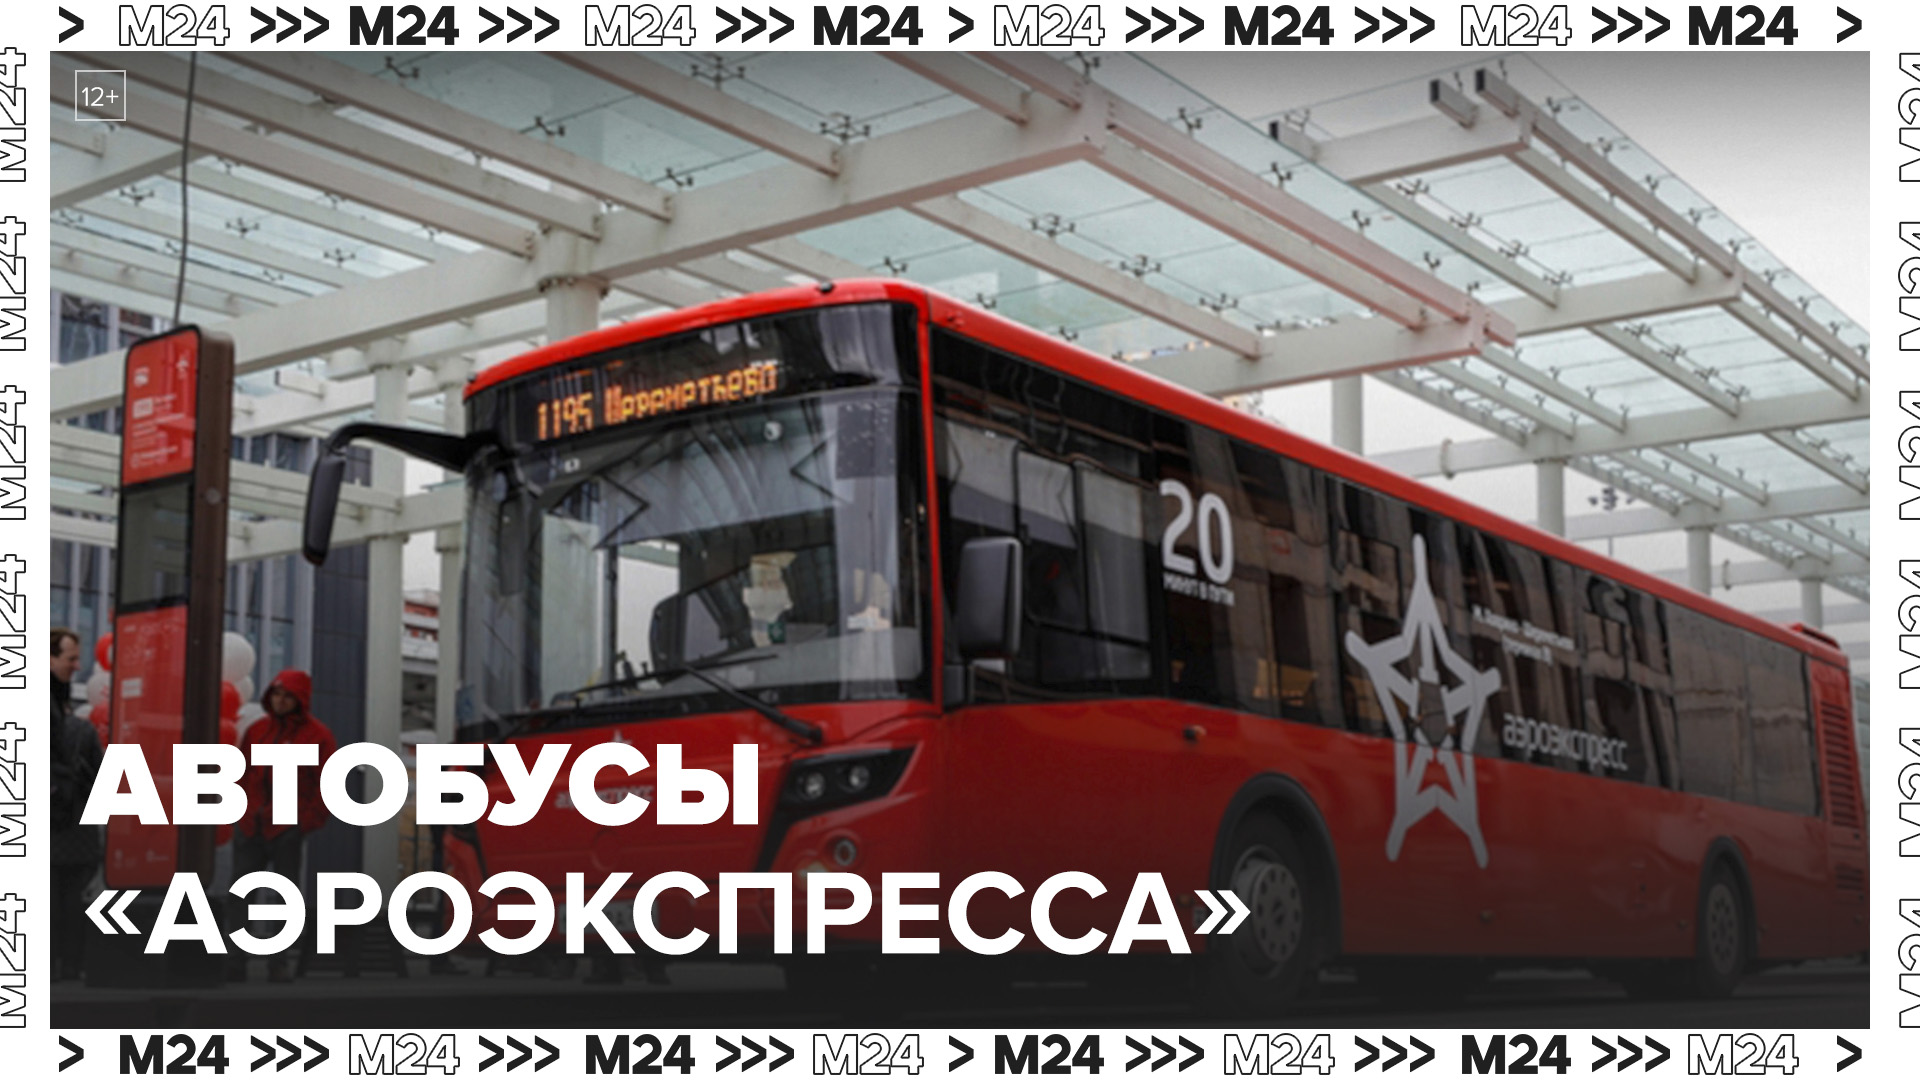 Автобусы "Аэроэкспресса" начнут ходить от станции метро "Ховрино" до Шереметьево с 1 июня- Москва 24